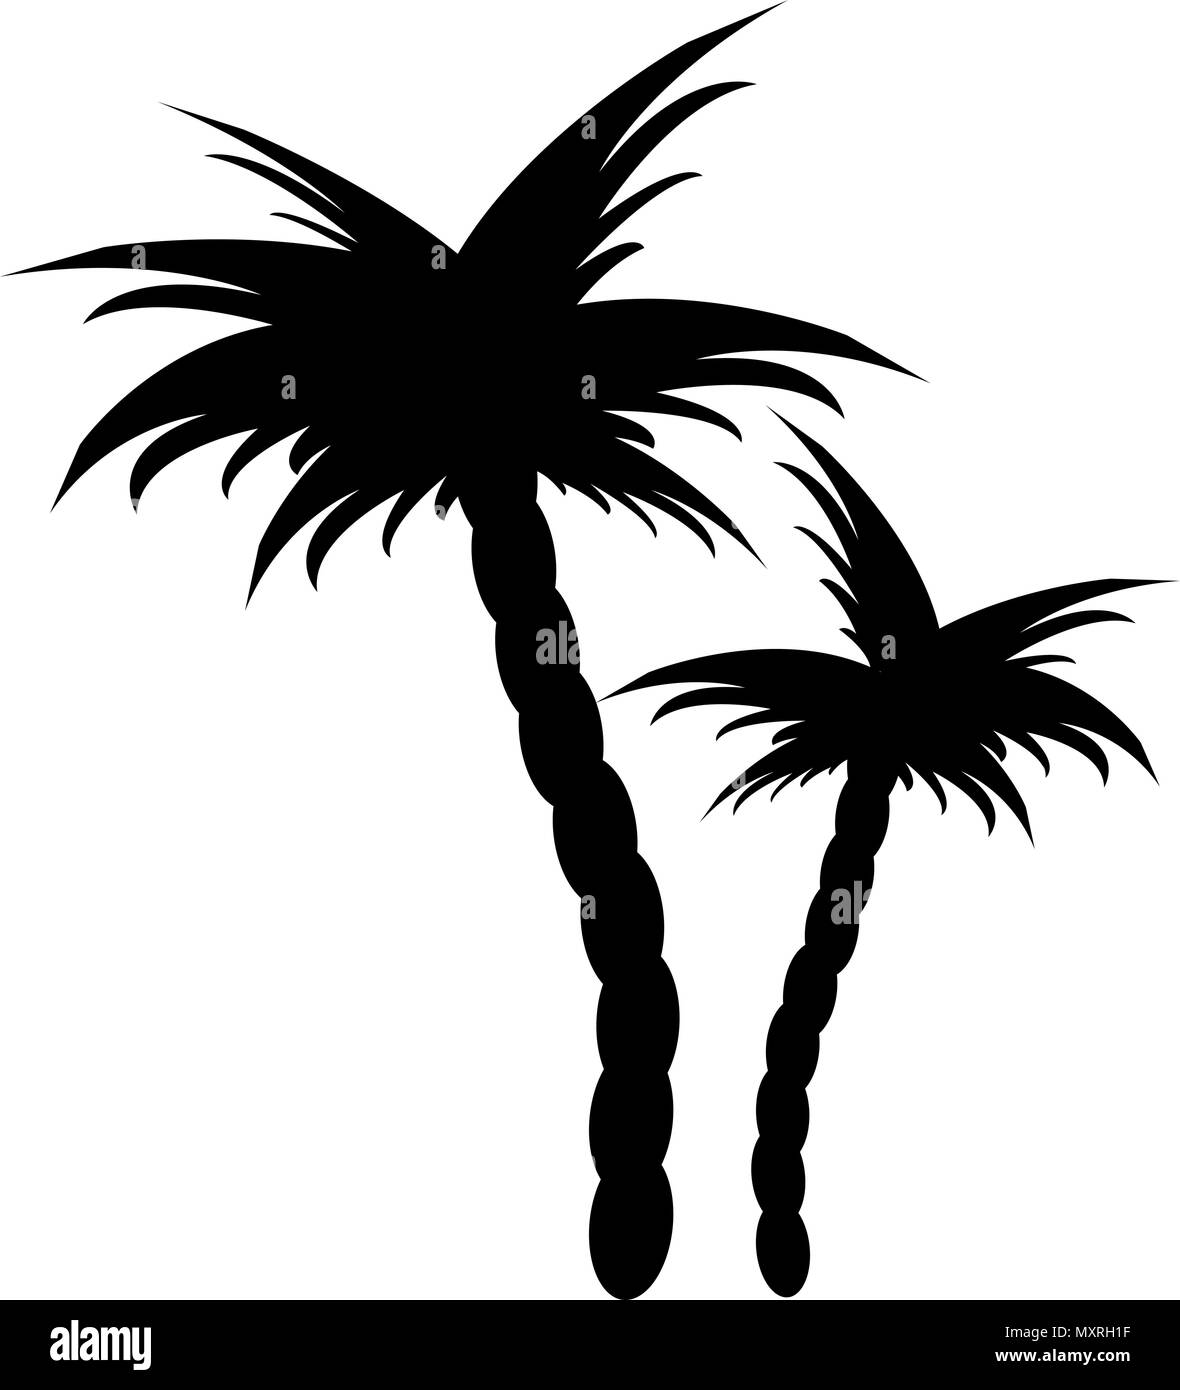 Illustrazioni vettoriali silhouette di palme Illustrazione Vettoriale